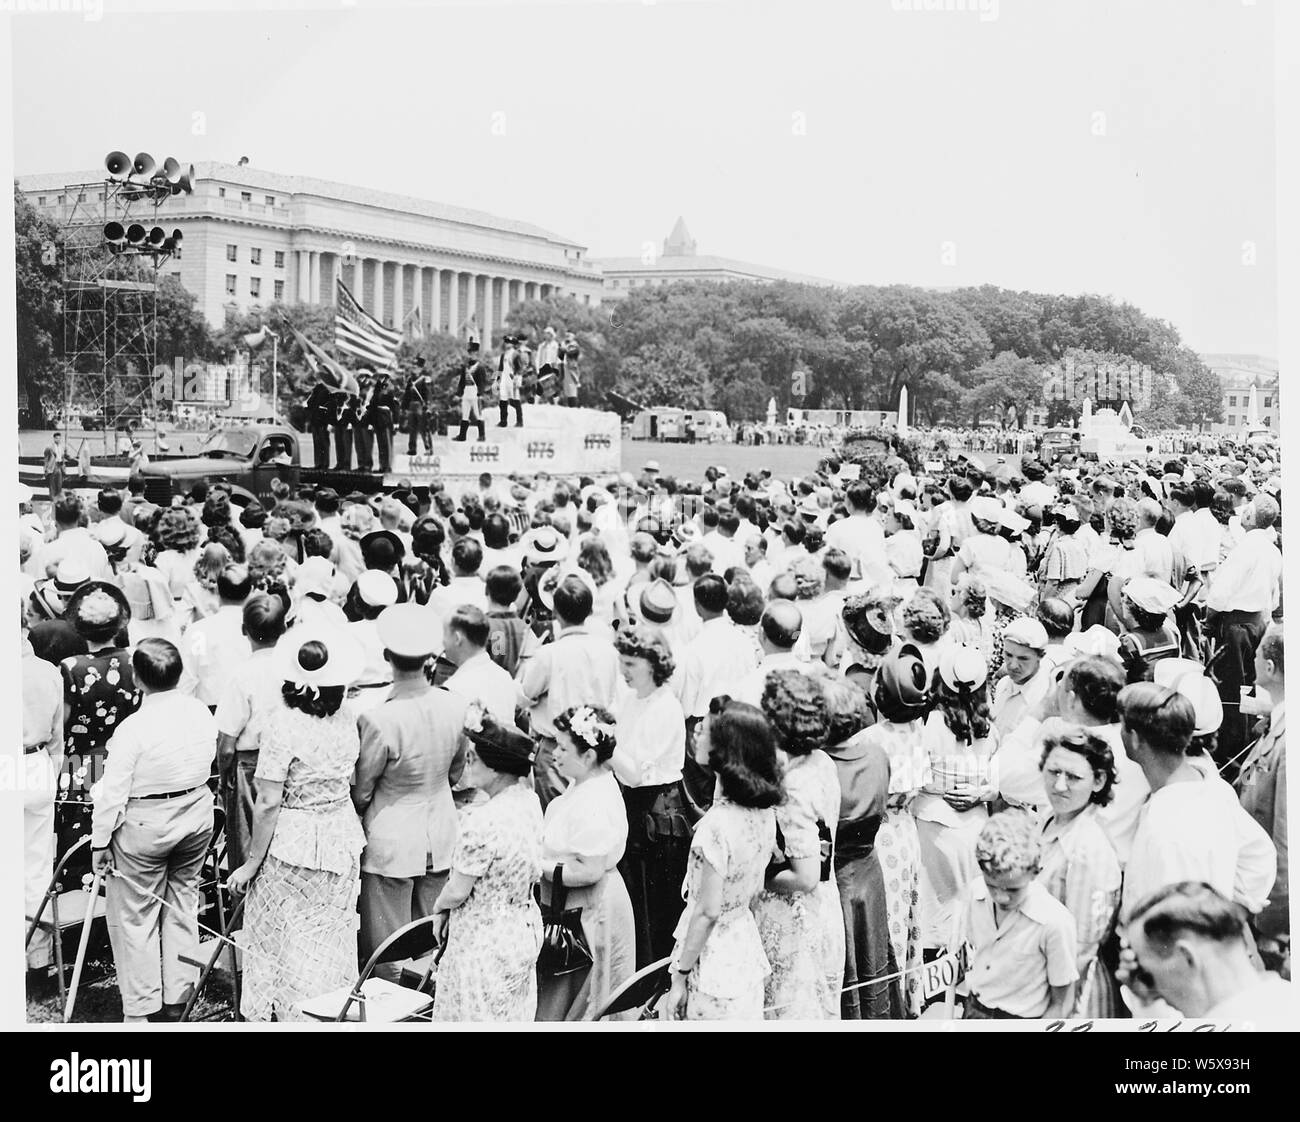 El Presidente Truman asiste a las ceremonias de celebración del 100º aniversario del Monumento a Washington. Esta vista muestra la multitud viendo el desfile. Foto de stock